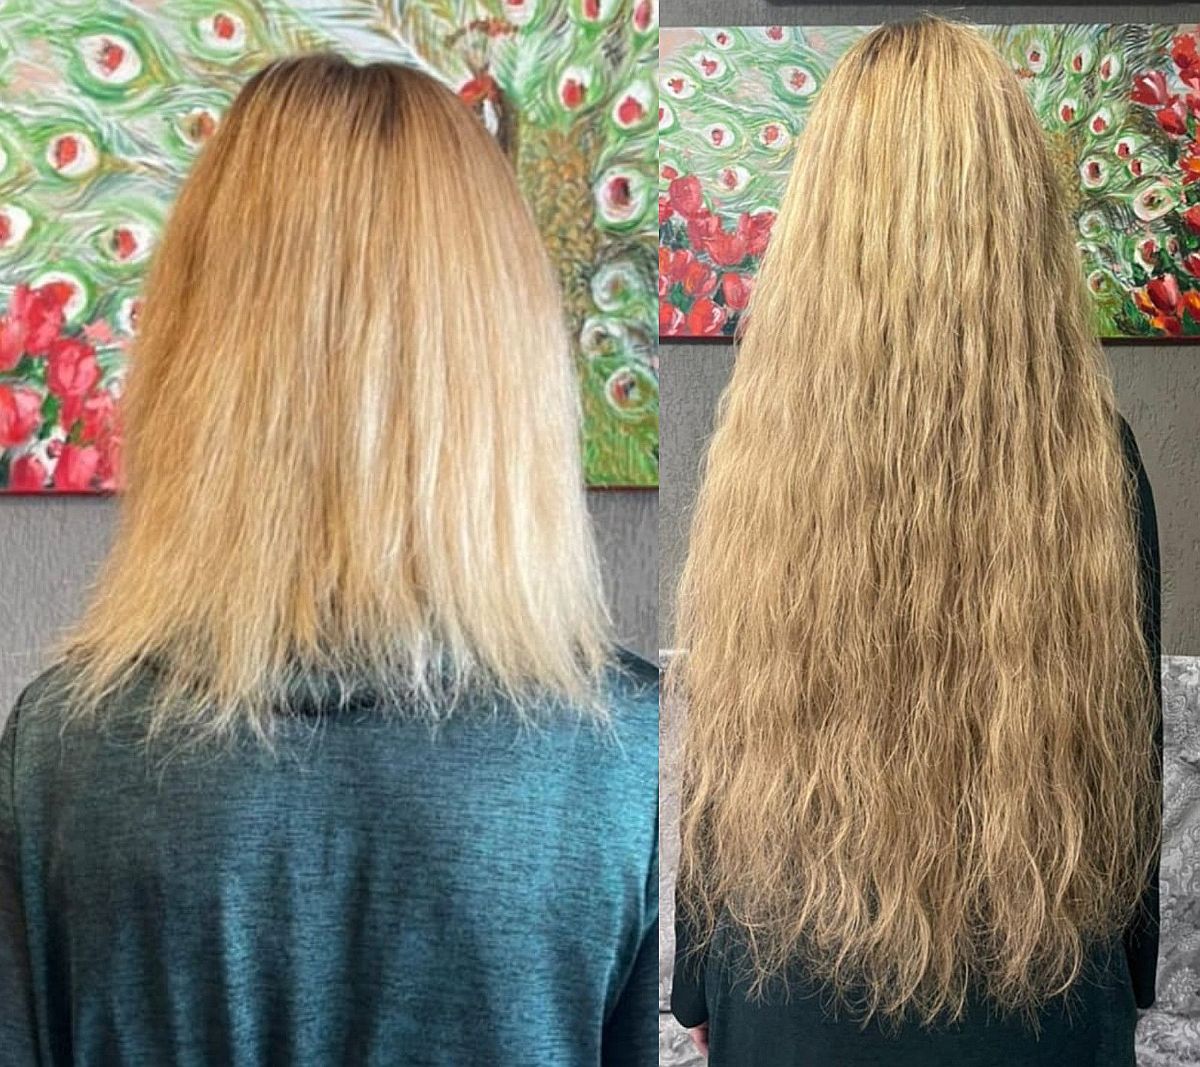 Irina Tóth - Čo s vlasmi? Kaderníctvo, predlžovanie vlasov. A toto je výsledok na blond hlave. Foto účesu pred a po predlžovaní vlasov.